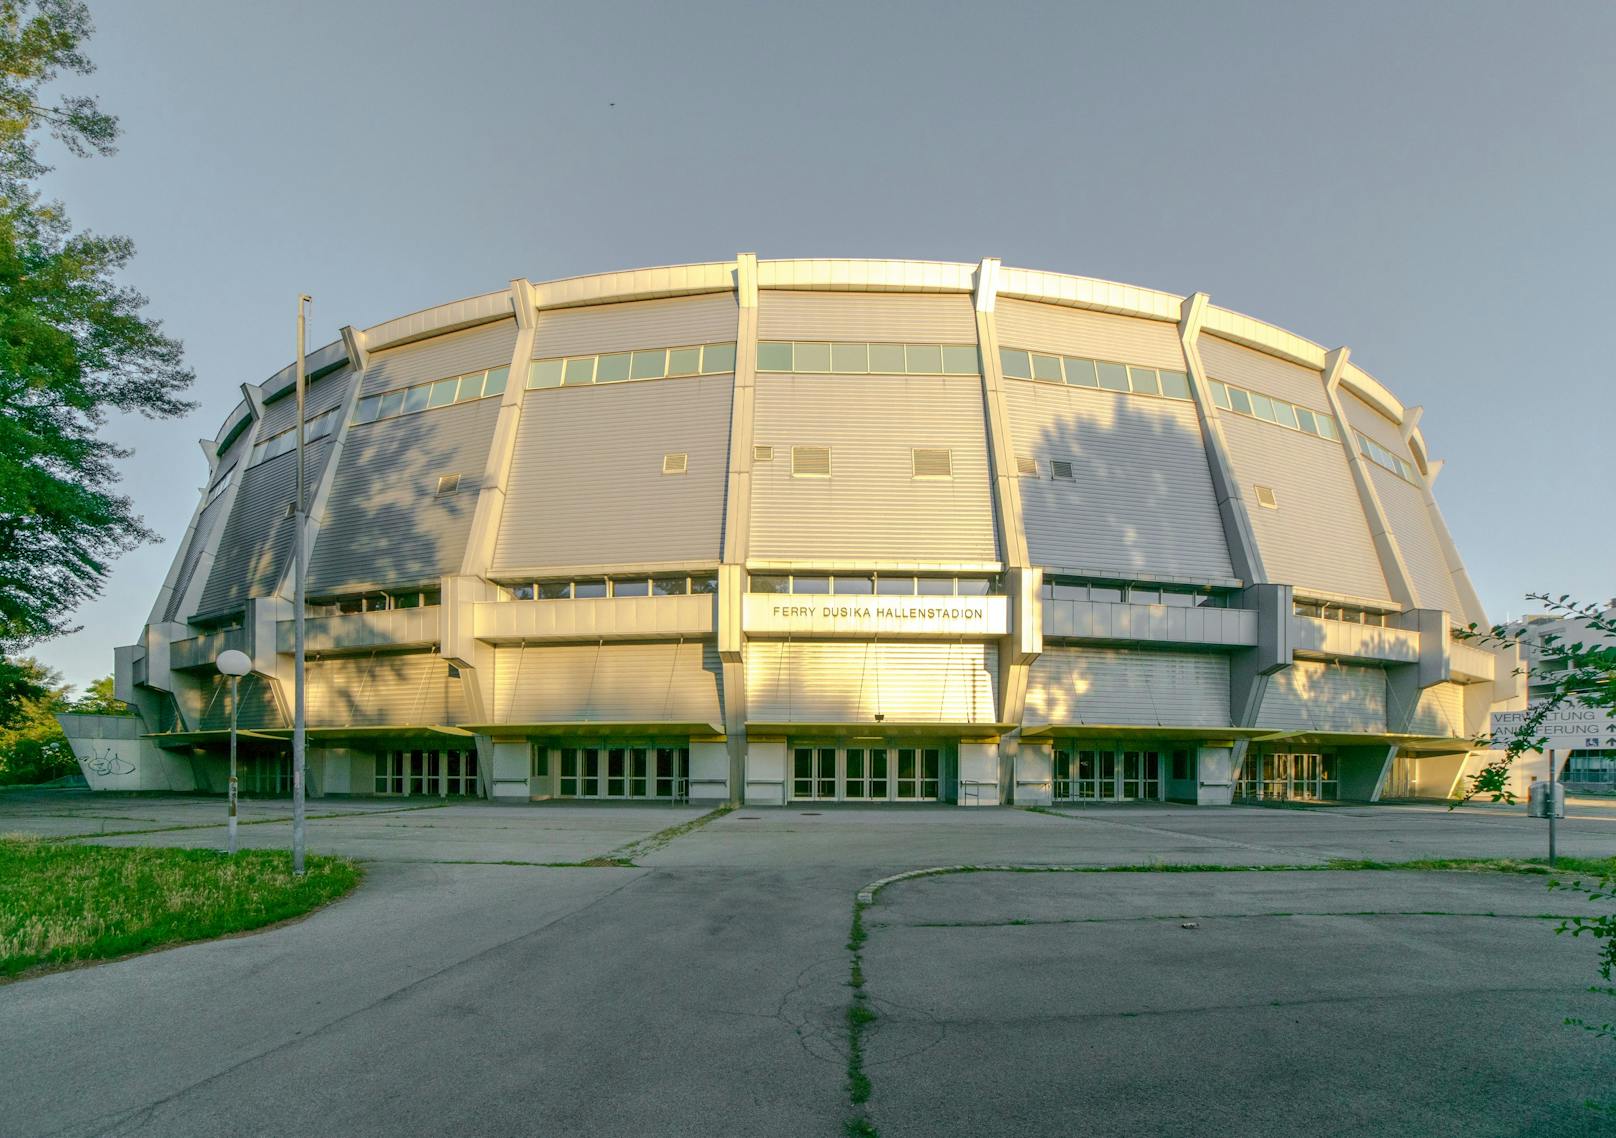 Das Ferry-Dusika-Stadion in der Leopoldstadt ist in die Jahre gekommen. Eine Sanierung wäre zu teuer, nun macht es Platz für eine neue, multifunktionale Sport- und Veranstaltungshalle.